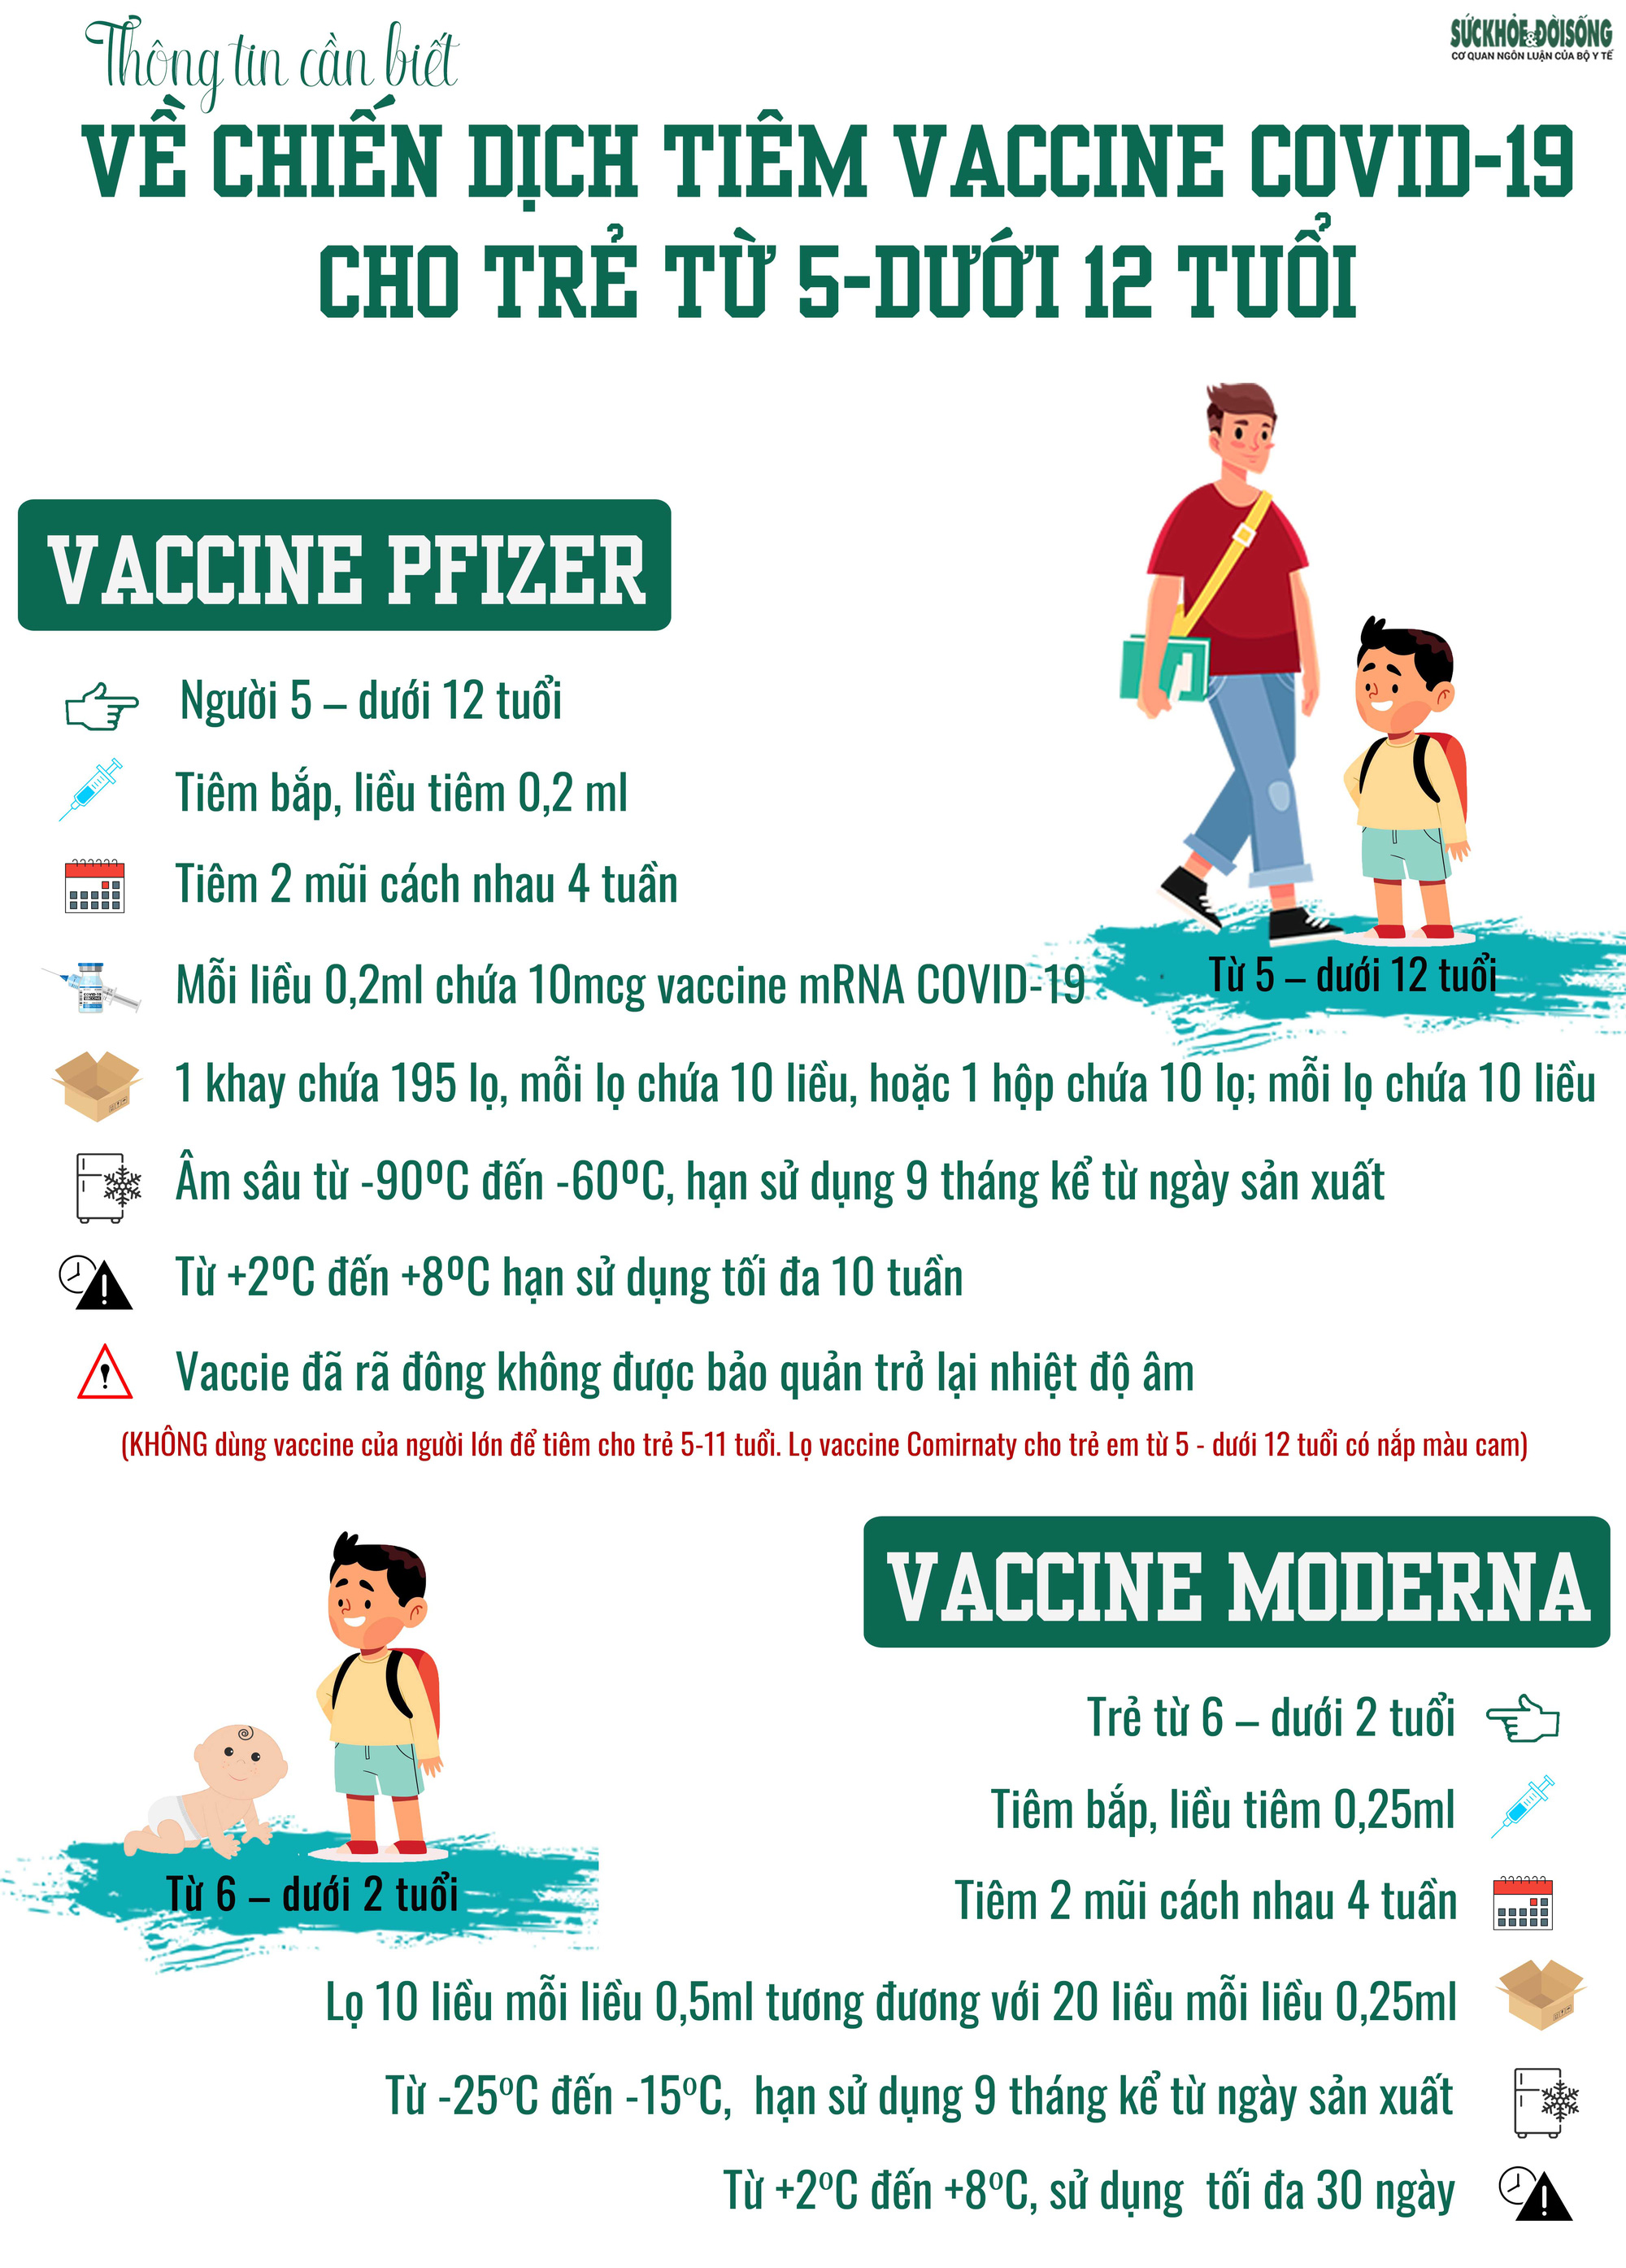 Những phản ứng nào có thể xảy ra đối với trẻ từ 5 - dưới 12 tuổi khi tiêm vaccine phòng COVID-19? - Ảnh 7.